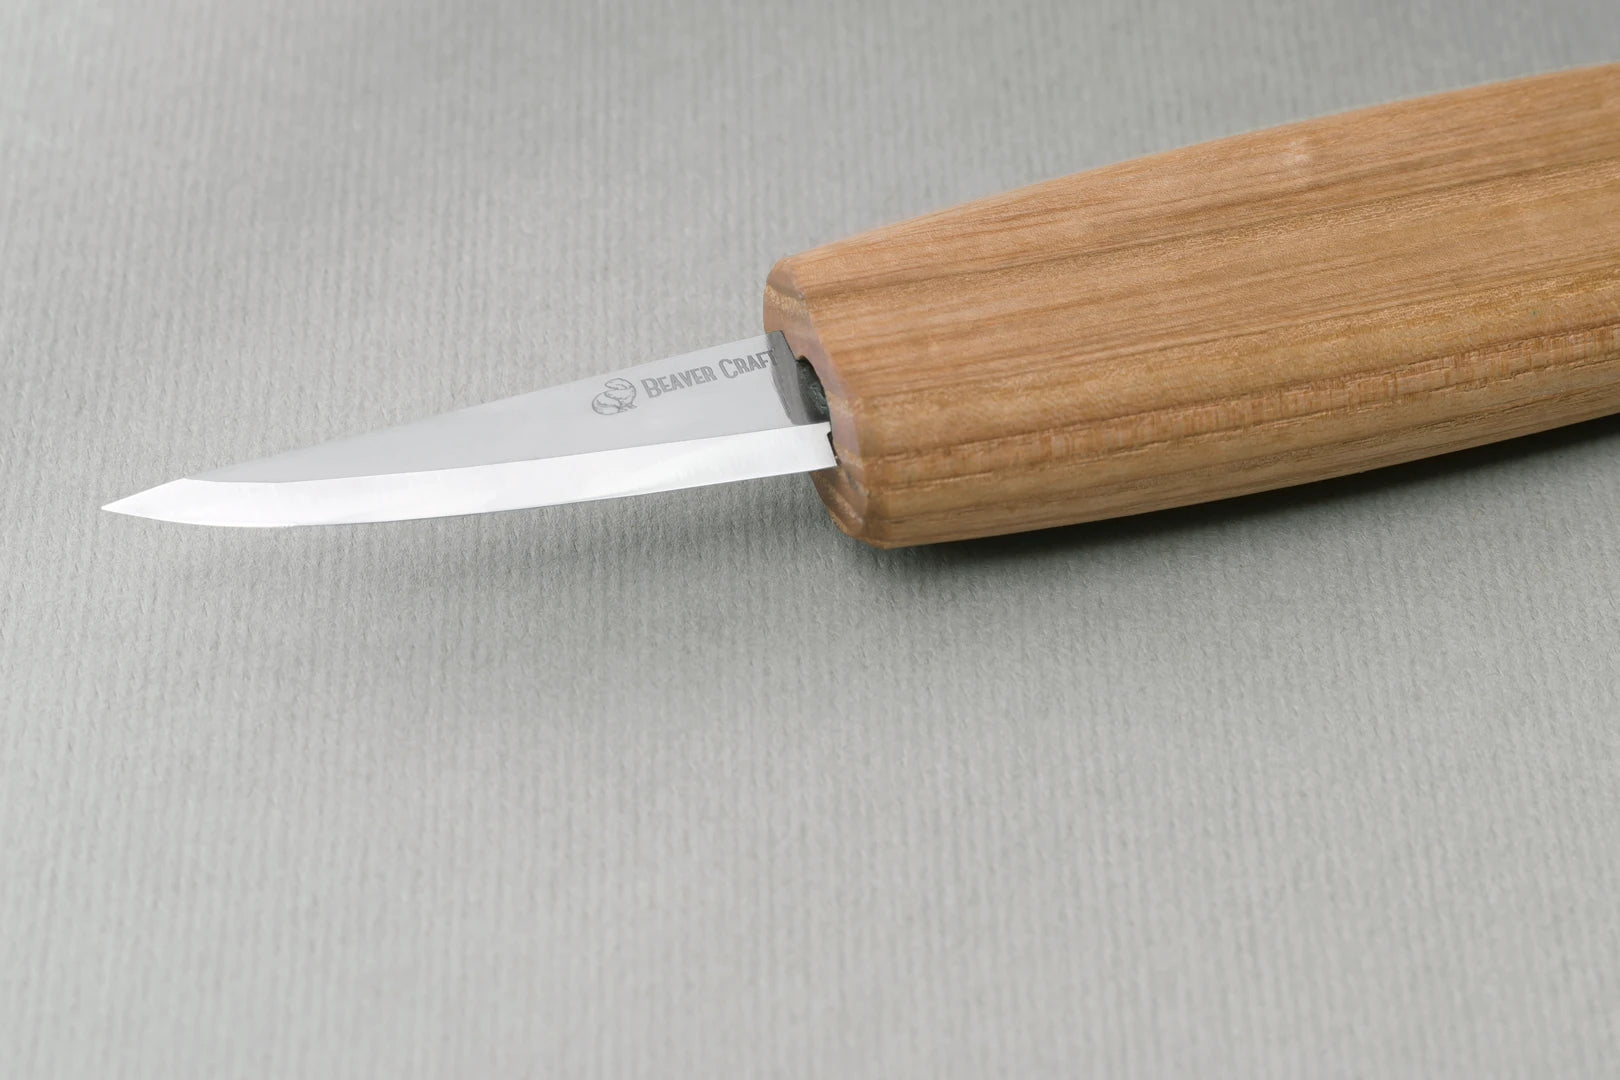 BeaverCraft Whittling Knife 49-C14